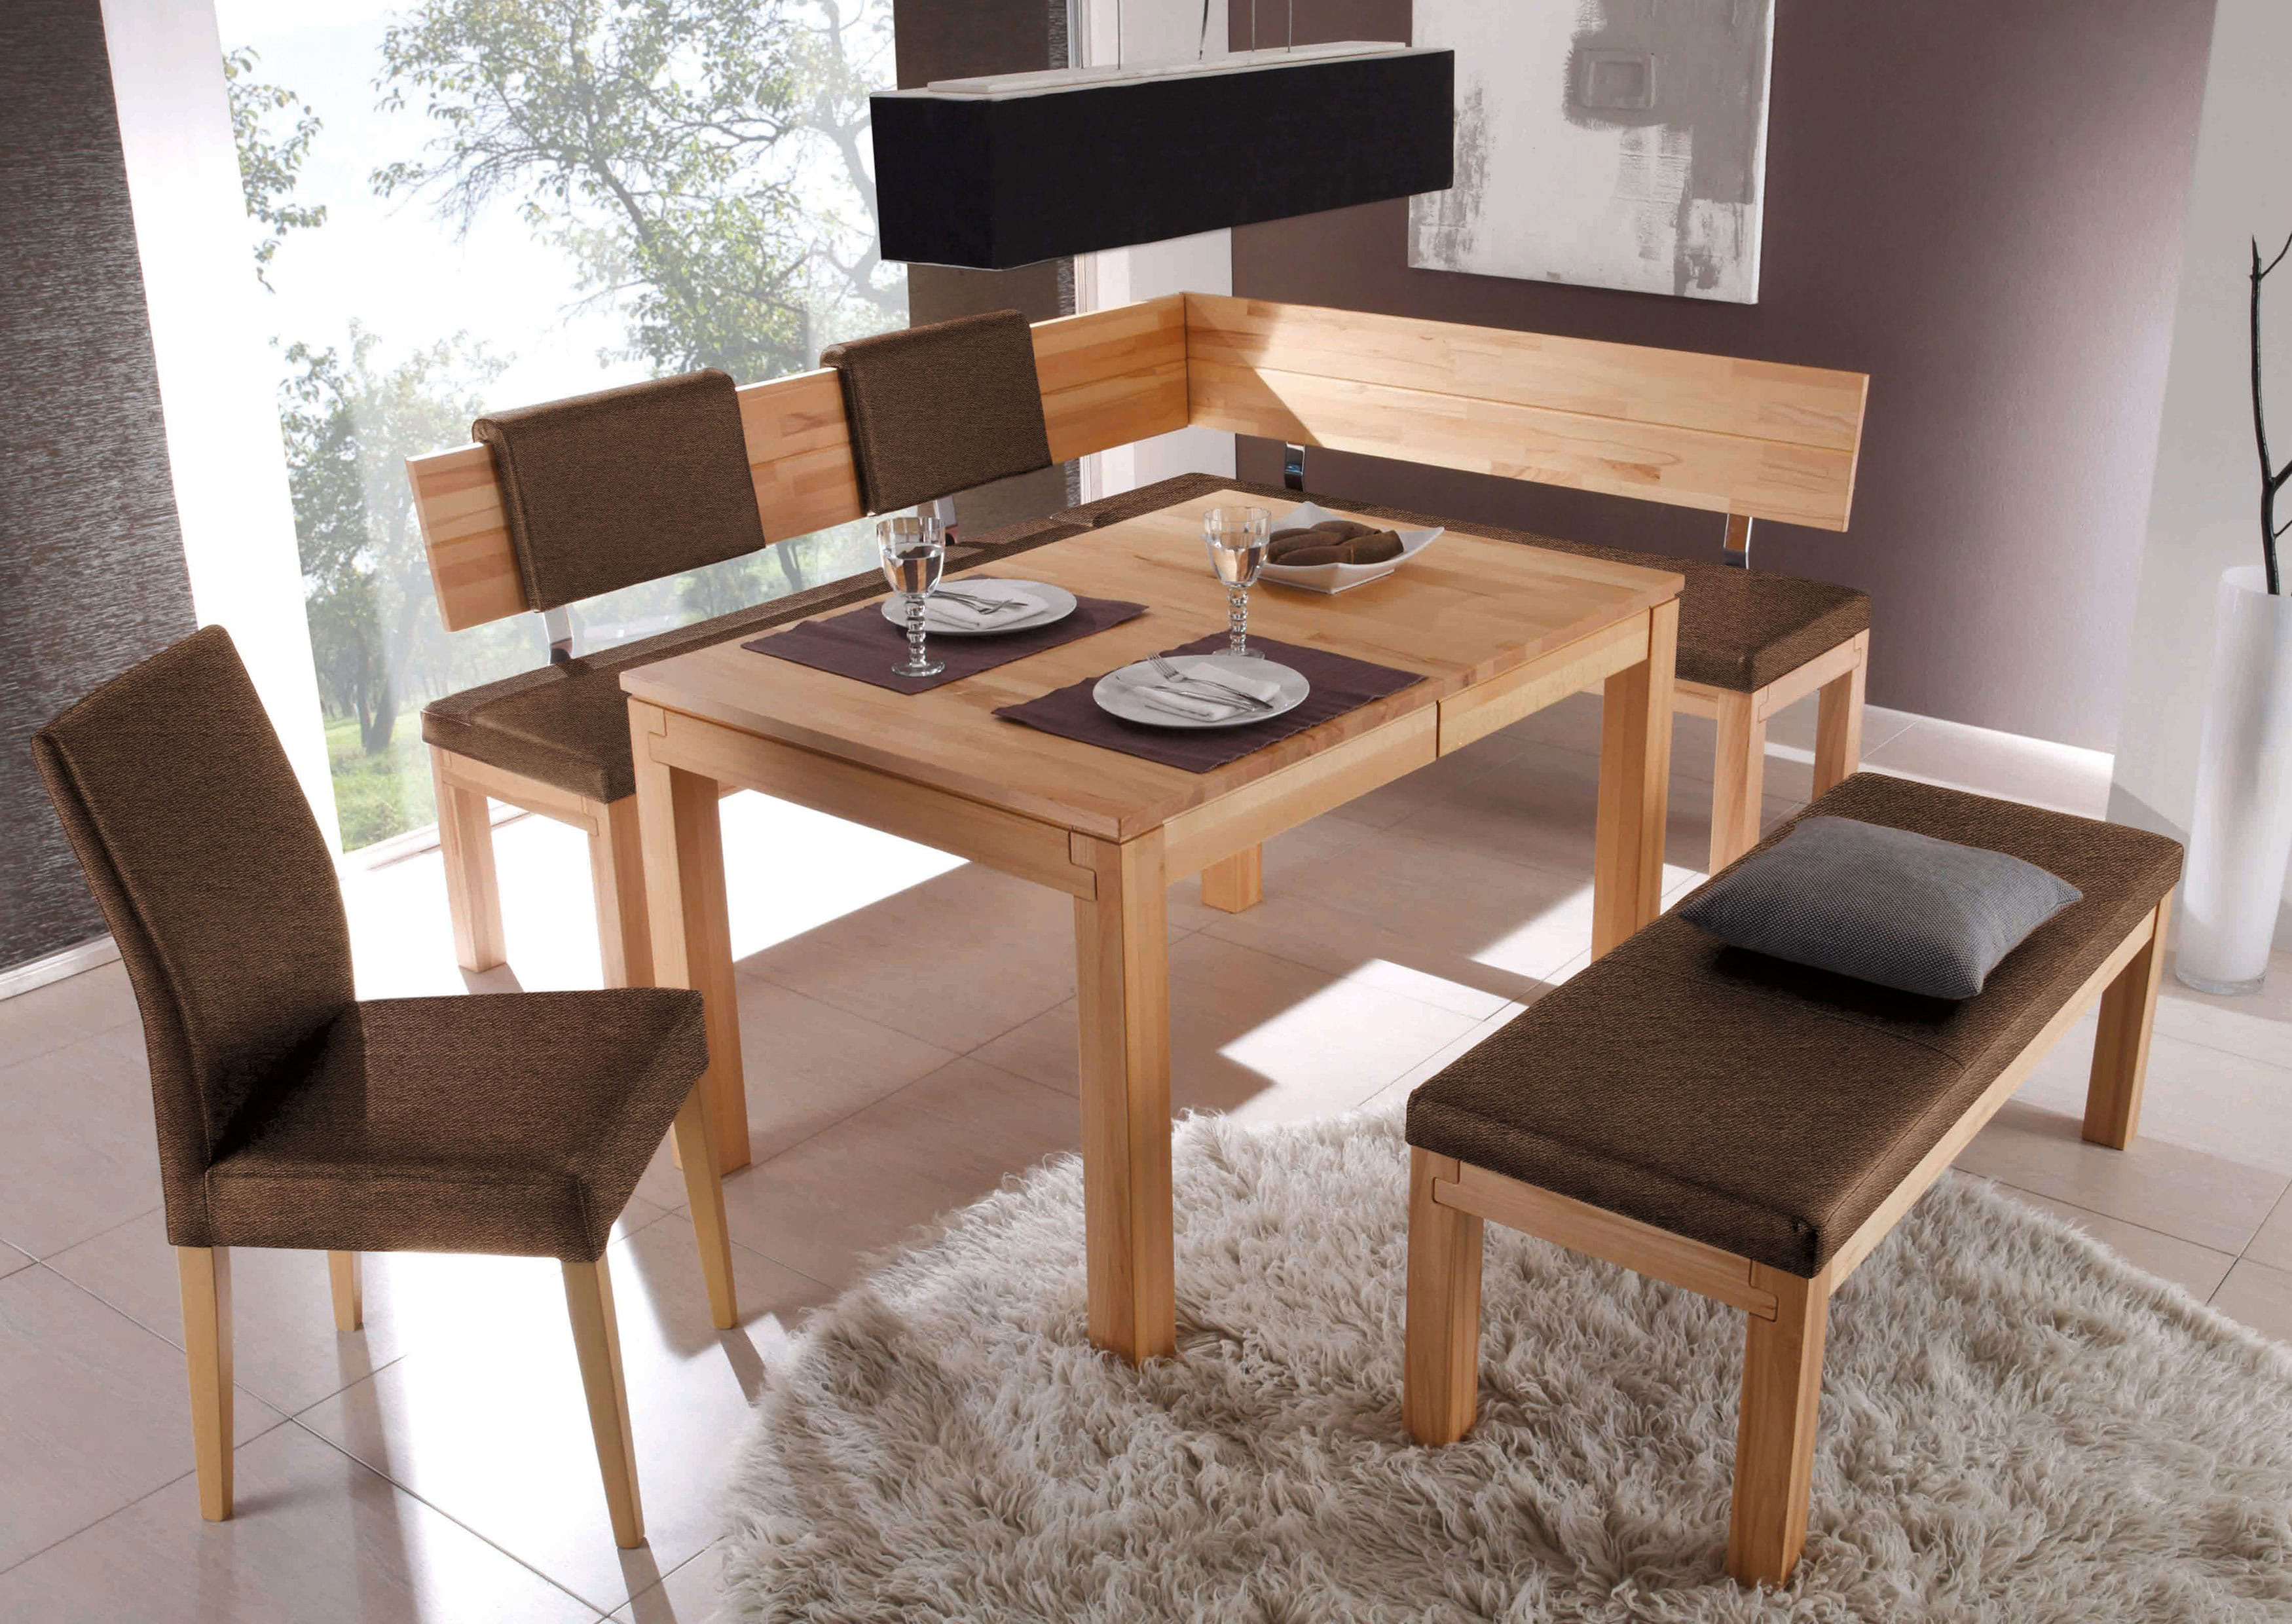 Standard Furniture Catania Eckbankgruppe massiv